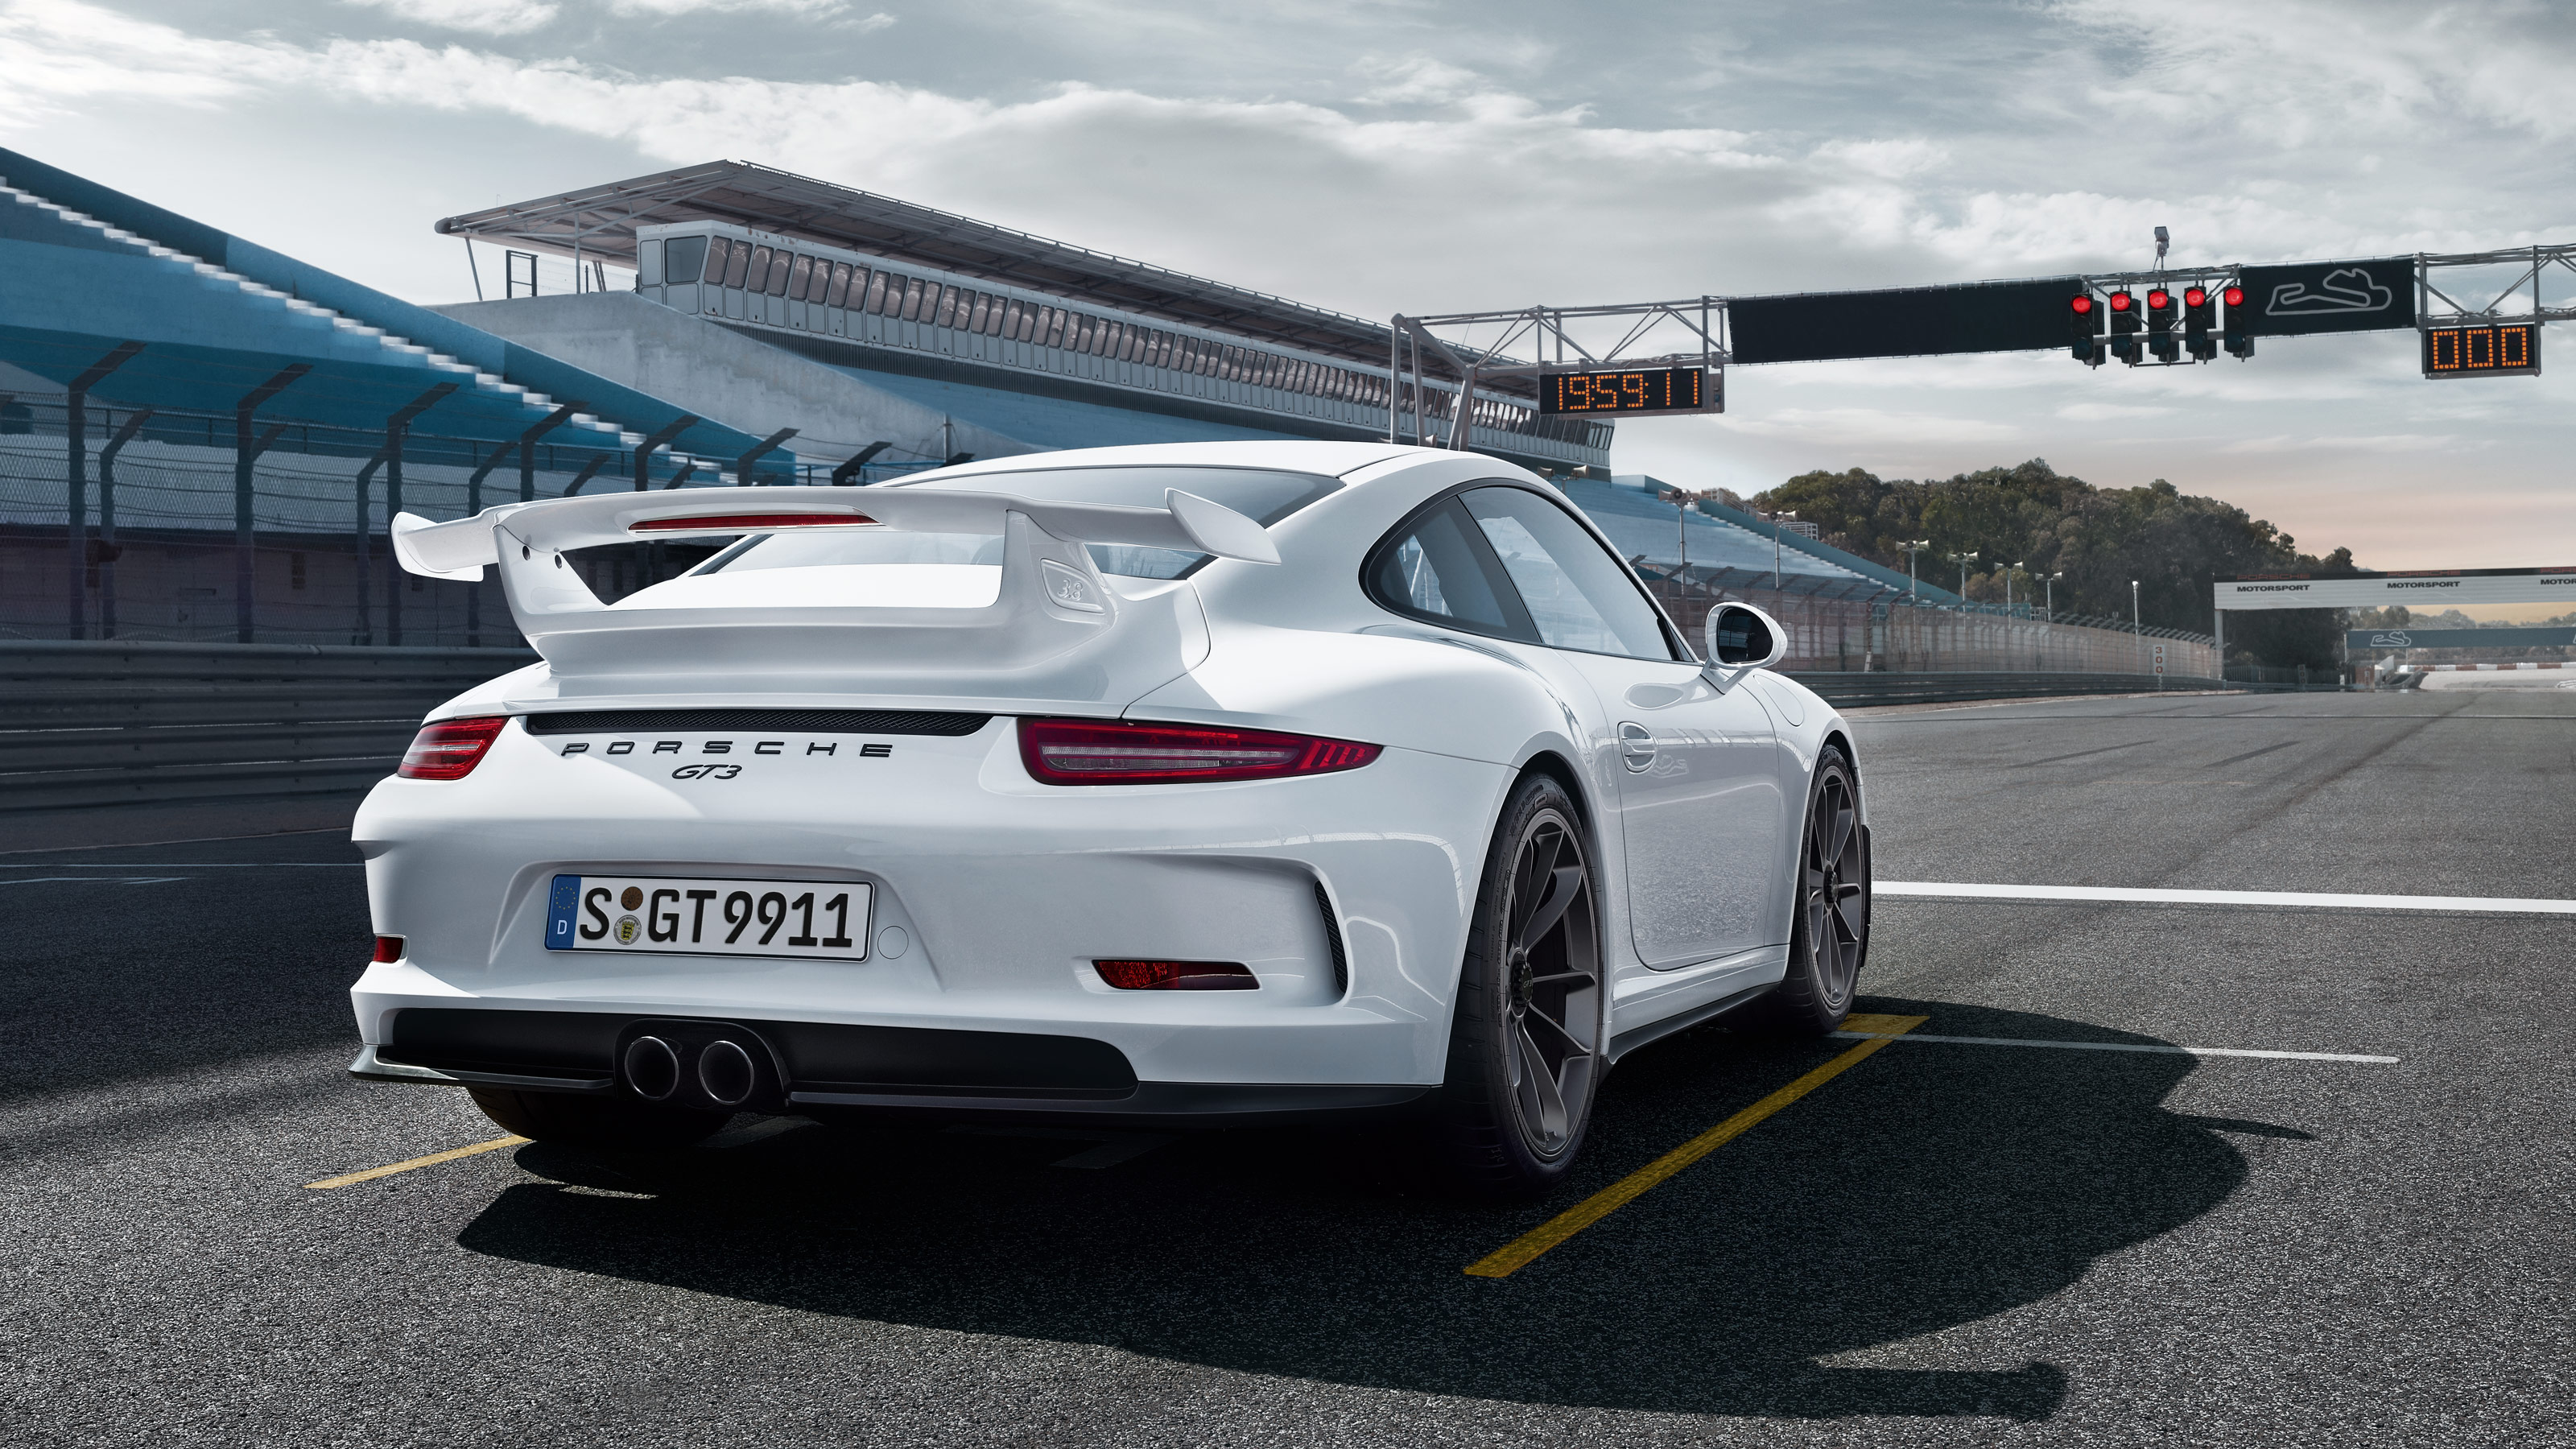  Porsche 911 Gt3 HQ Background Images